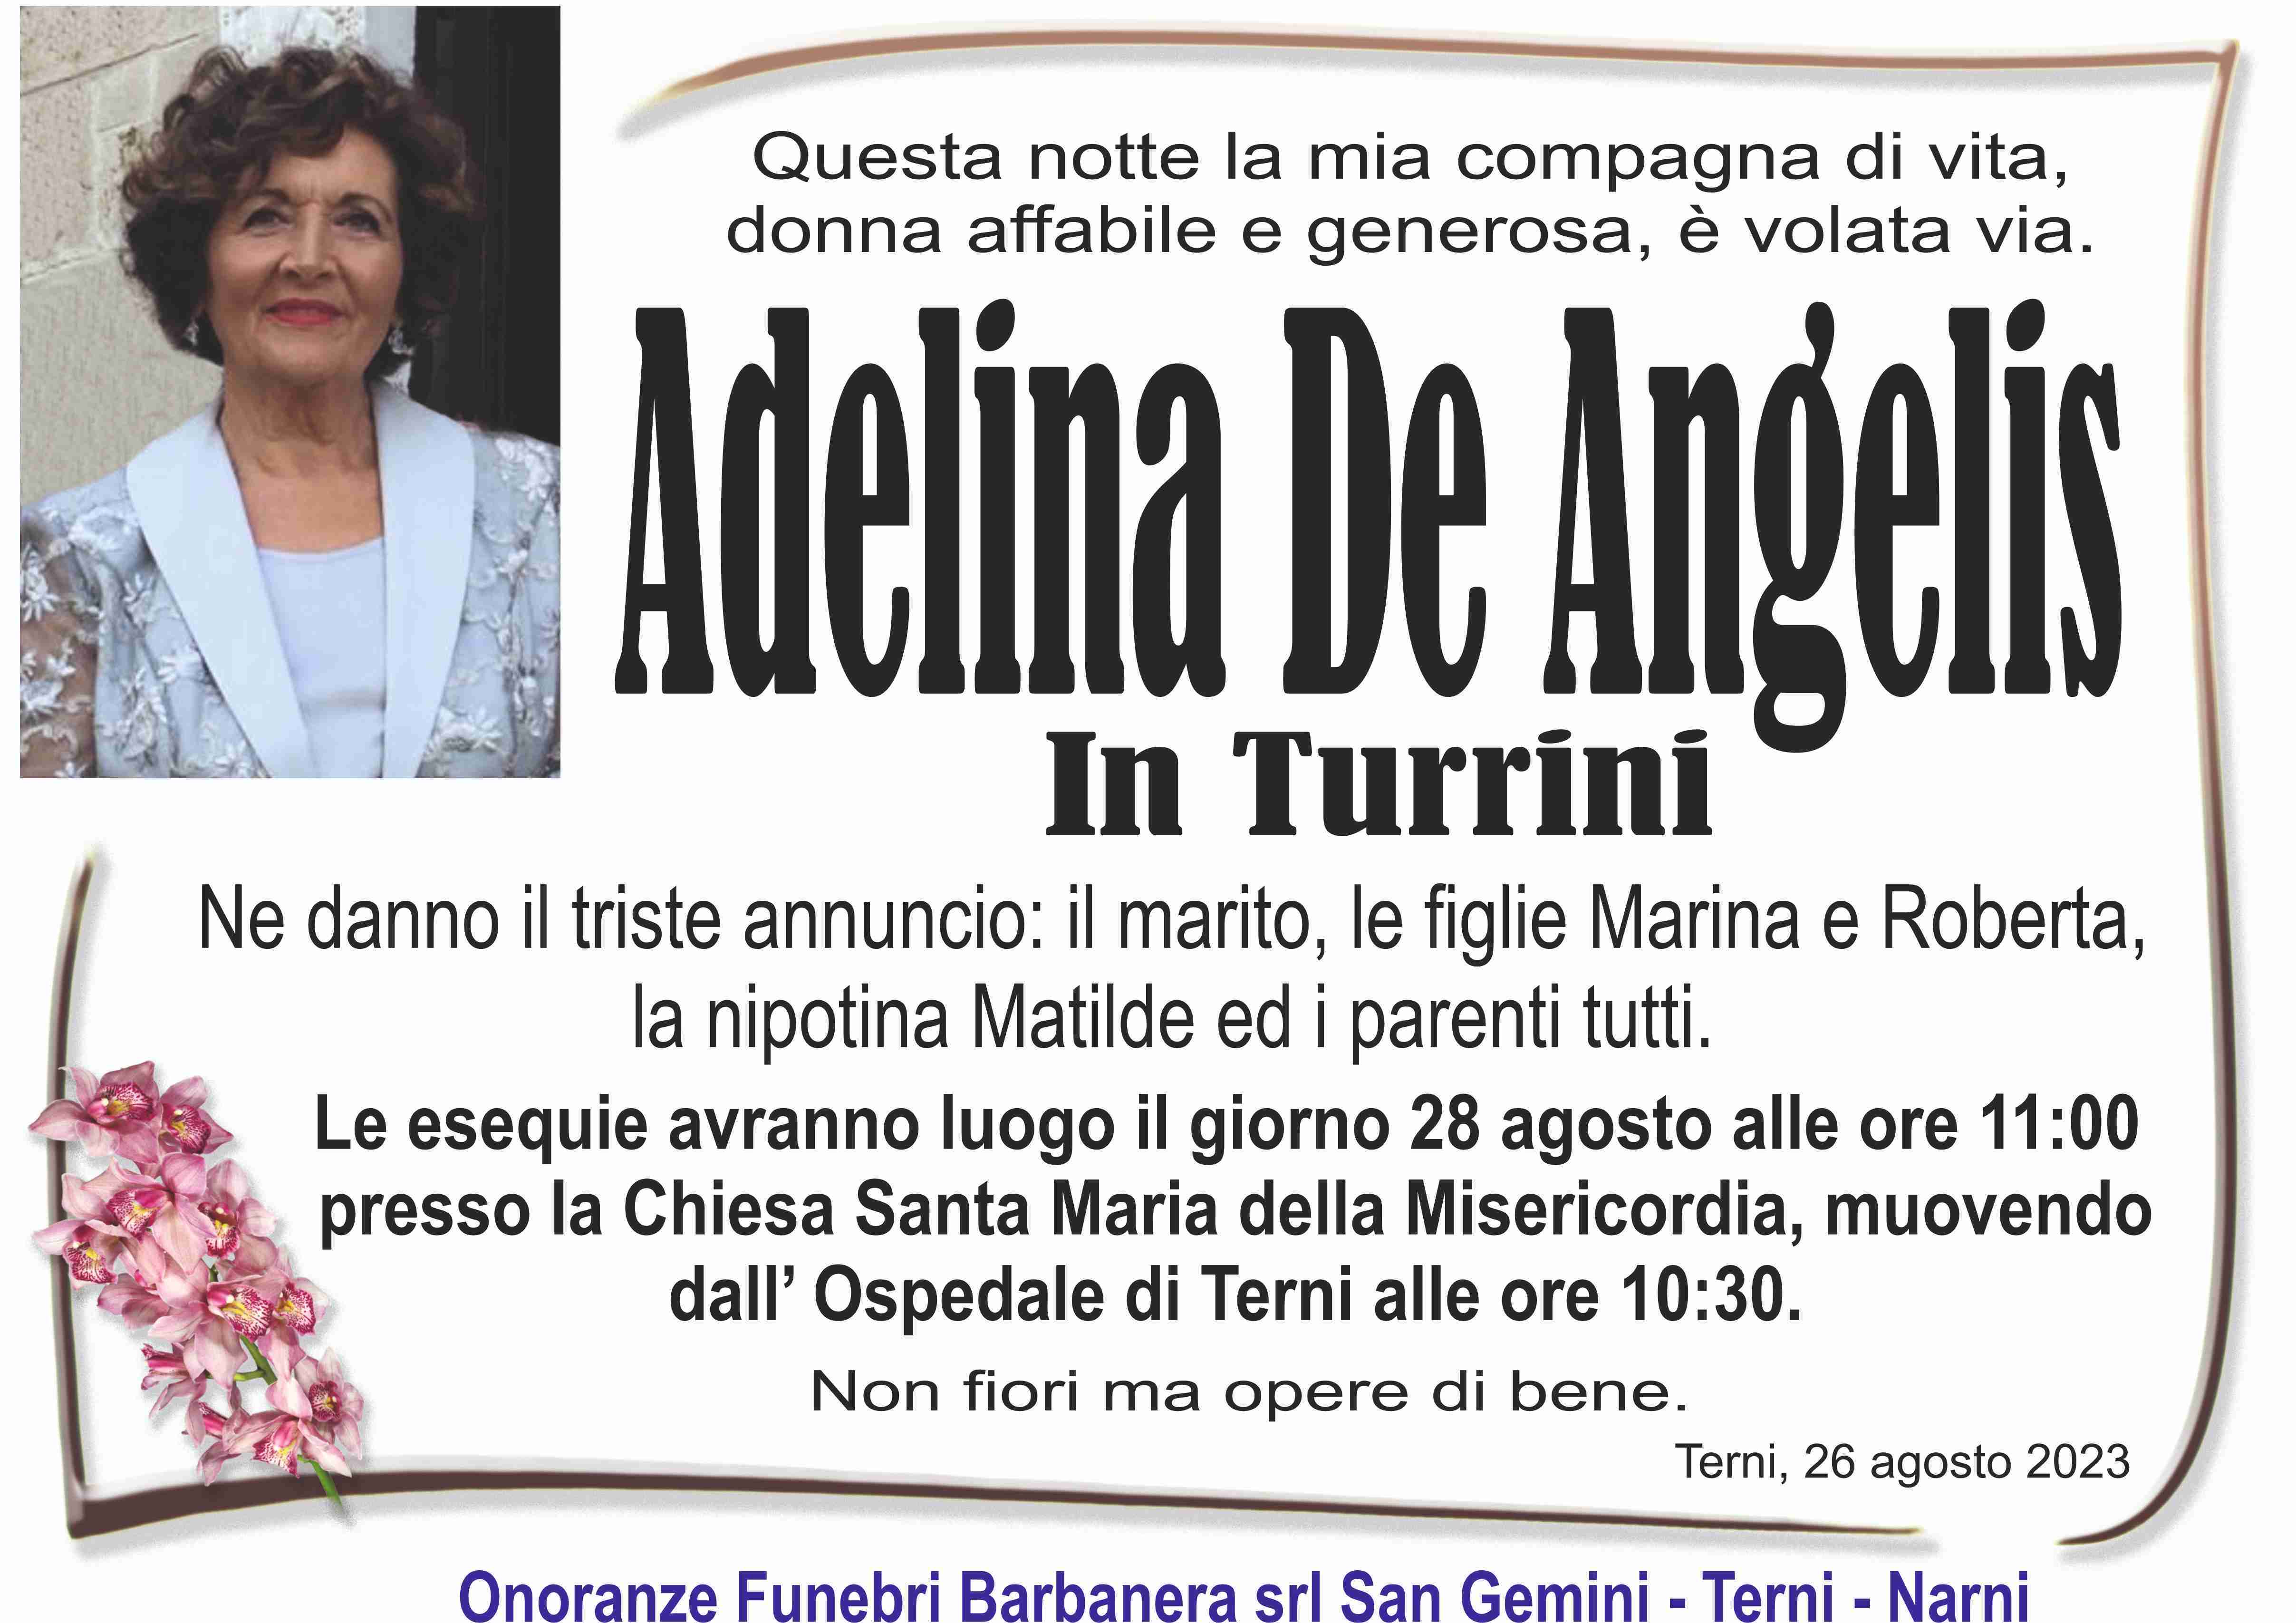 Adelina De Angelis